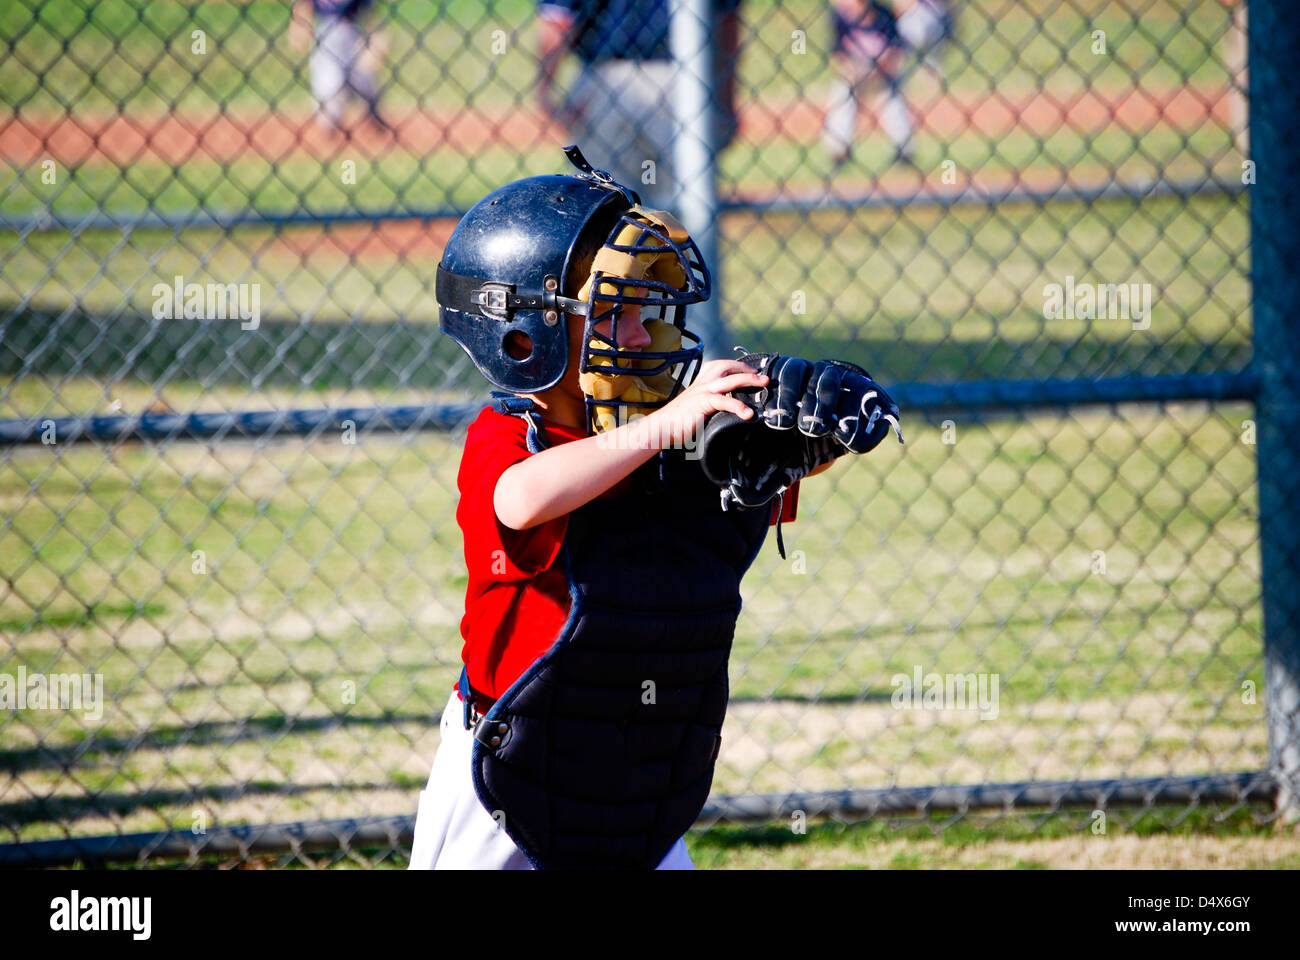 Little league baseball catcher. Stock Photo